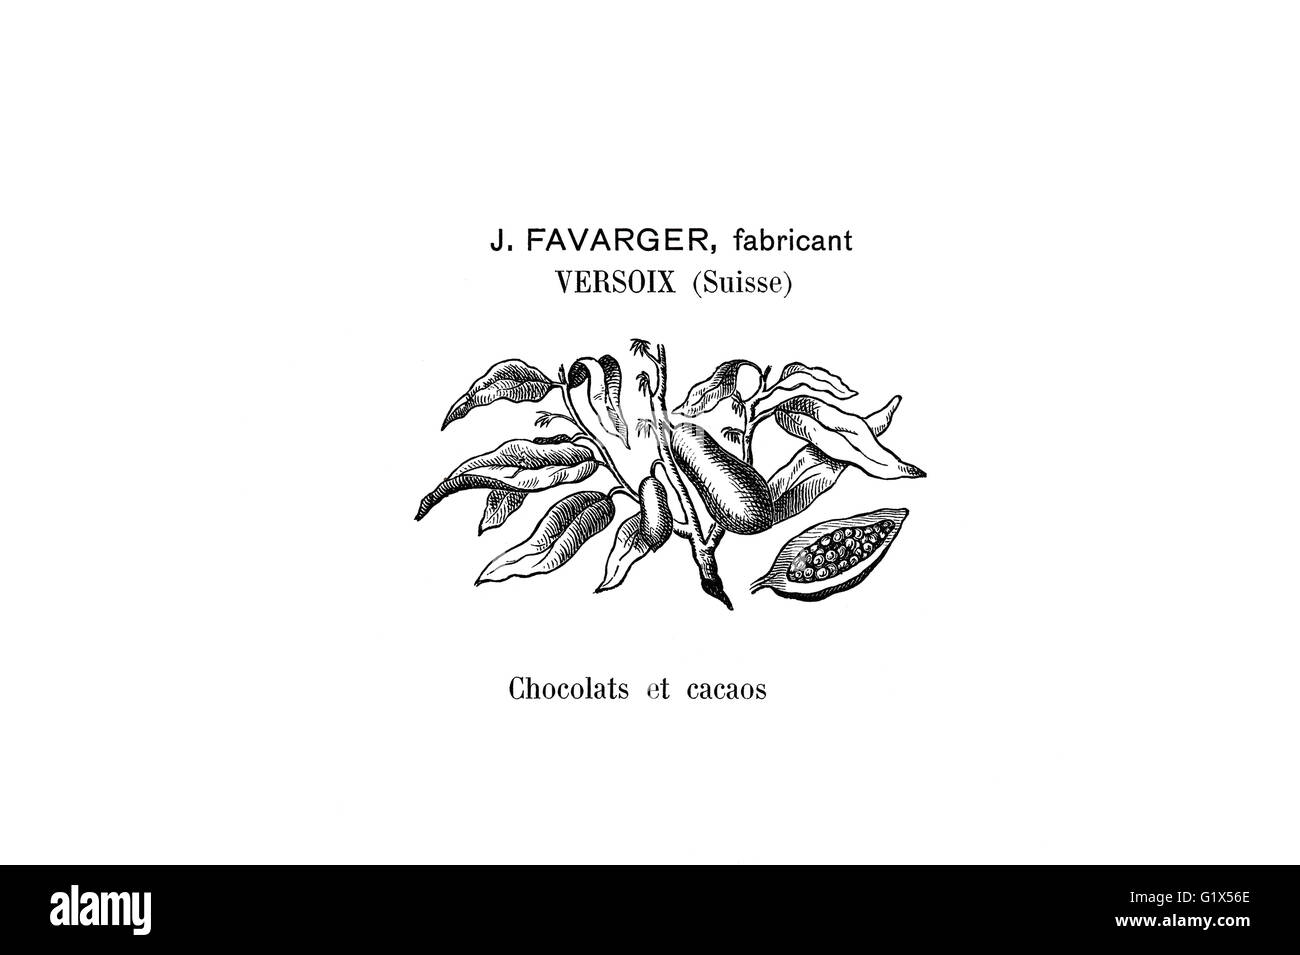 Marque historique du fabricant de chocolat suisse de 1901 Favrager Banque D'Images